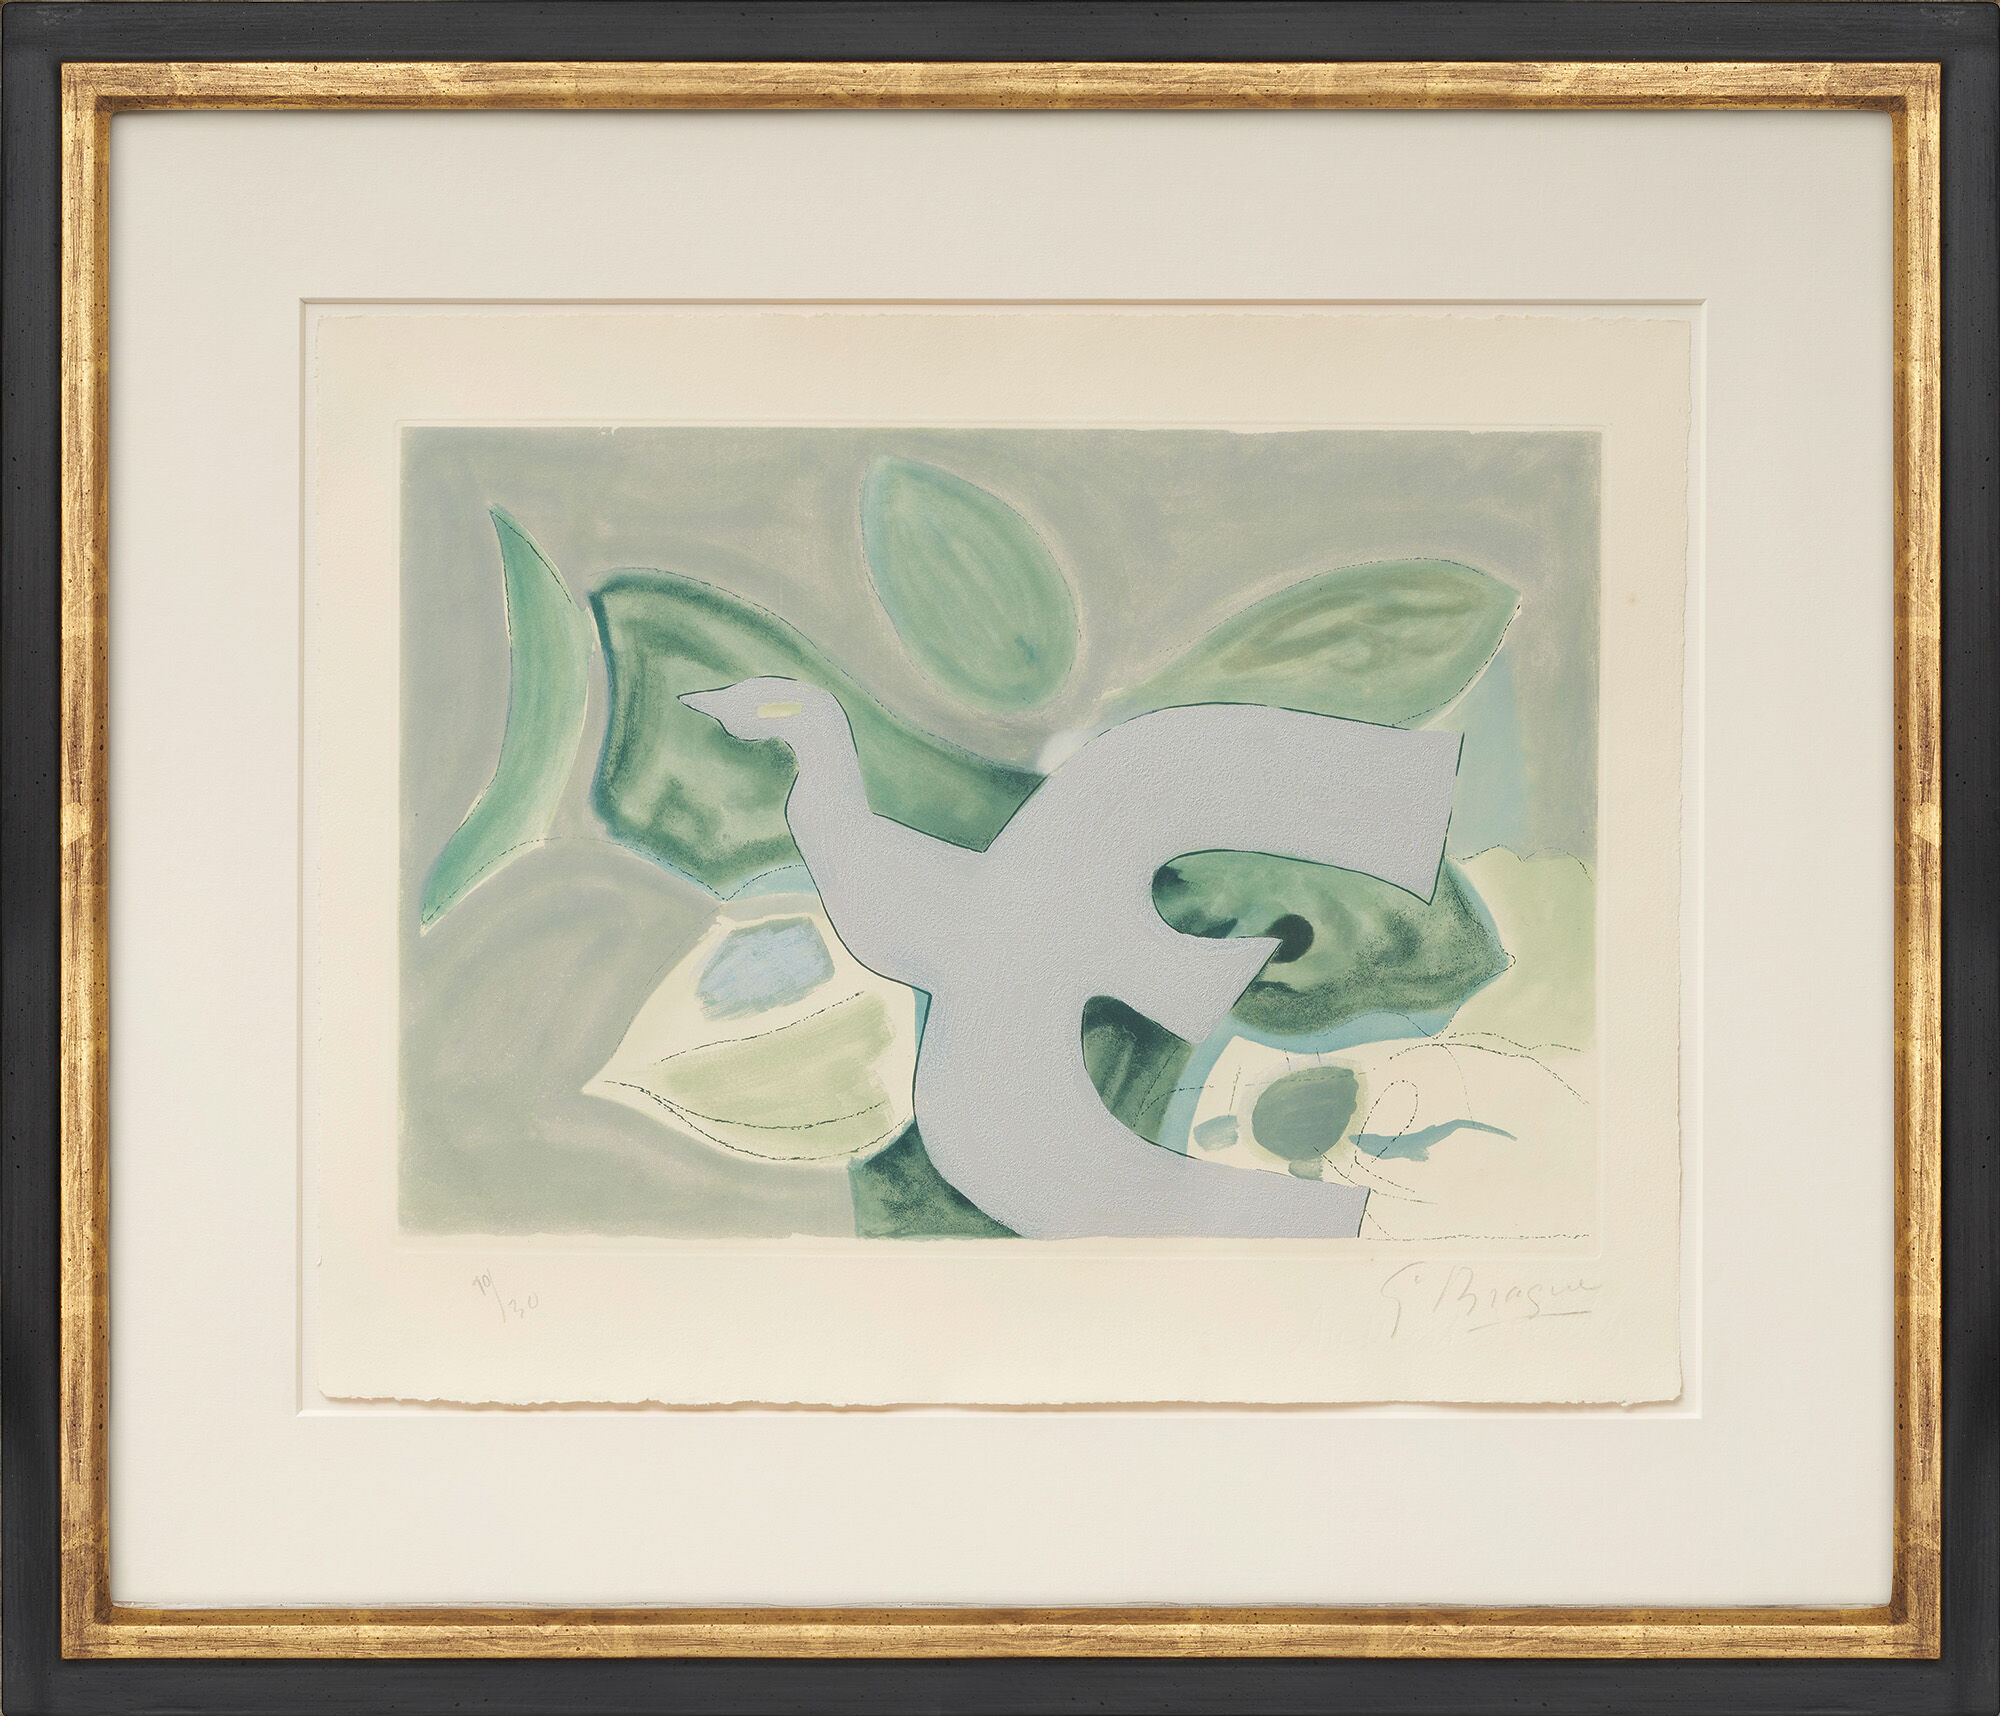 Picture "Oiseau gris sur fond vert" (1962) by Georges Braque